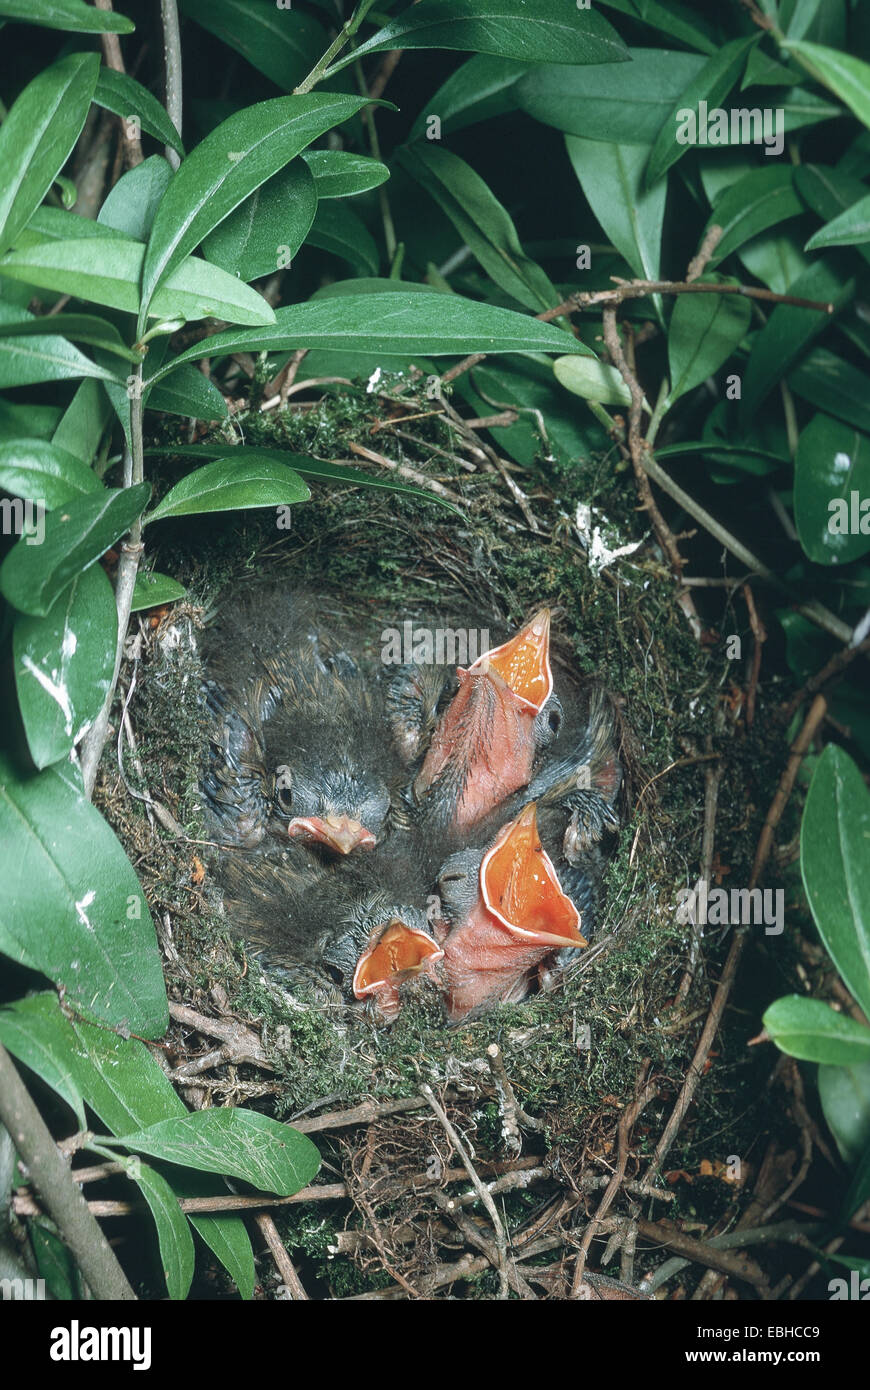 (Prunella modularis dunnock), mendicidad squeakers en el nido. Foto de stock